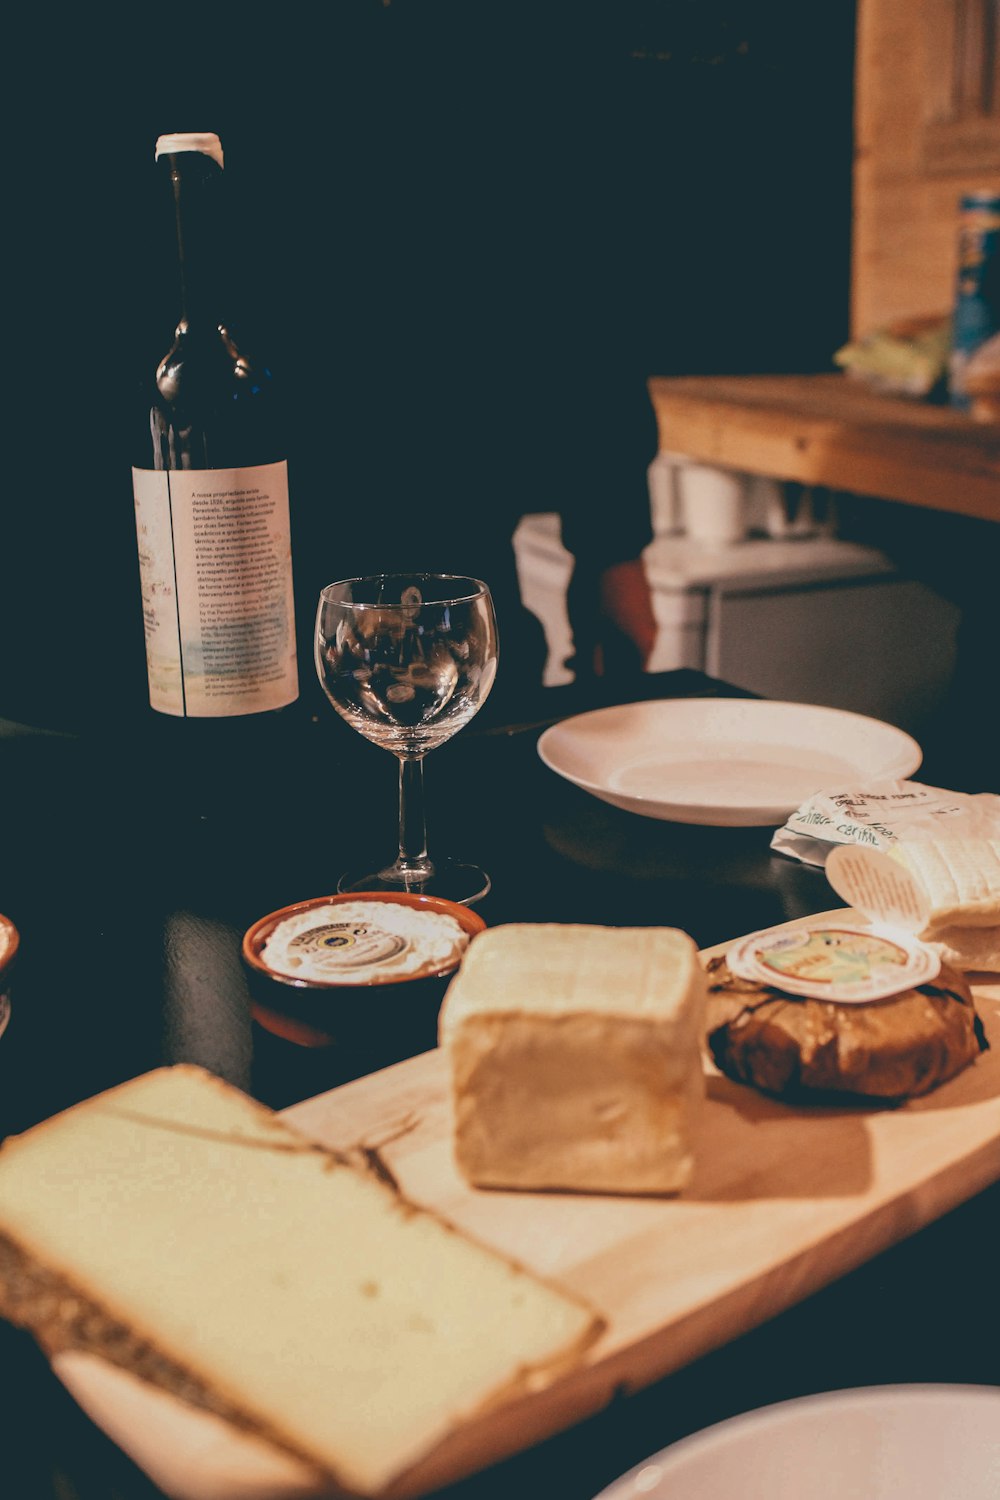 copo de vinho claro ao lado da placa de cerâmica branca na mesa preta